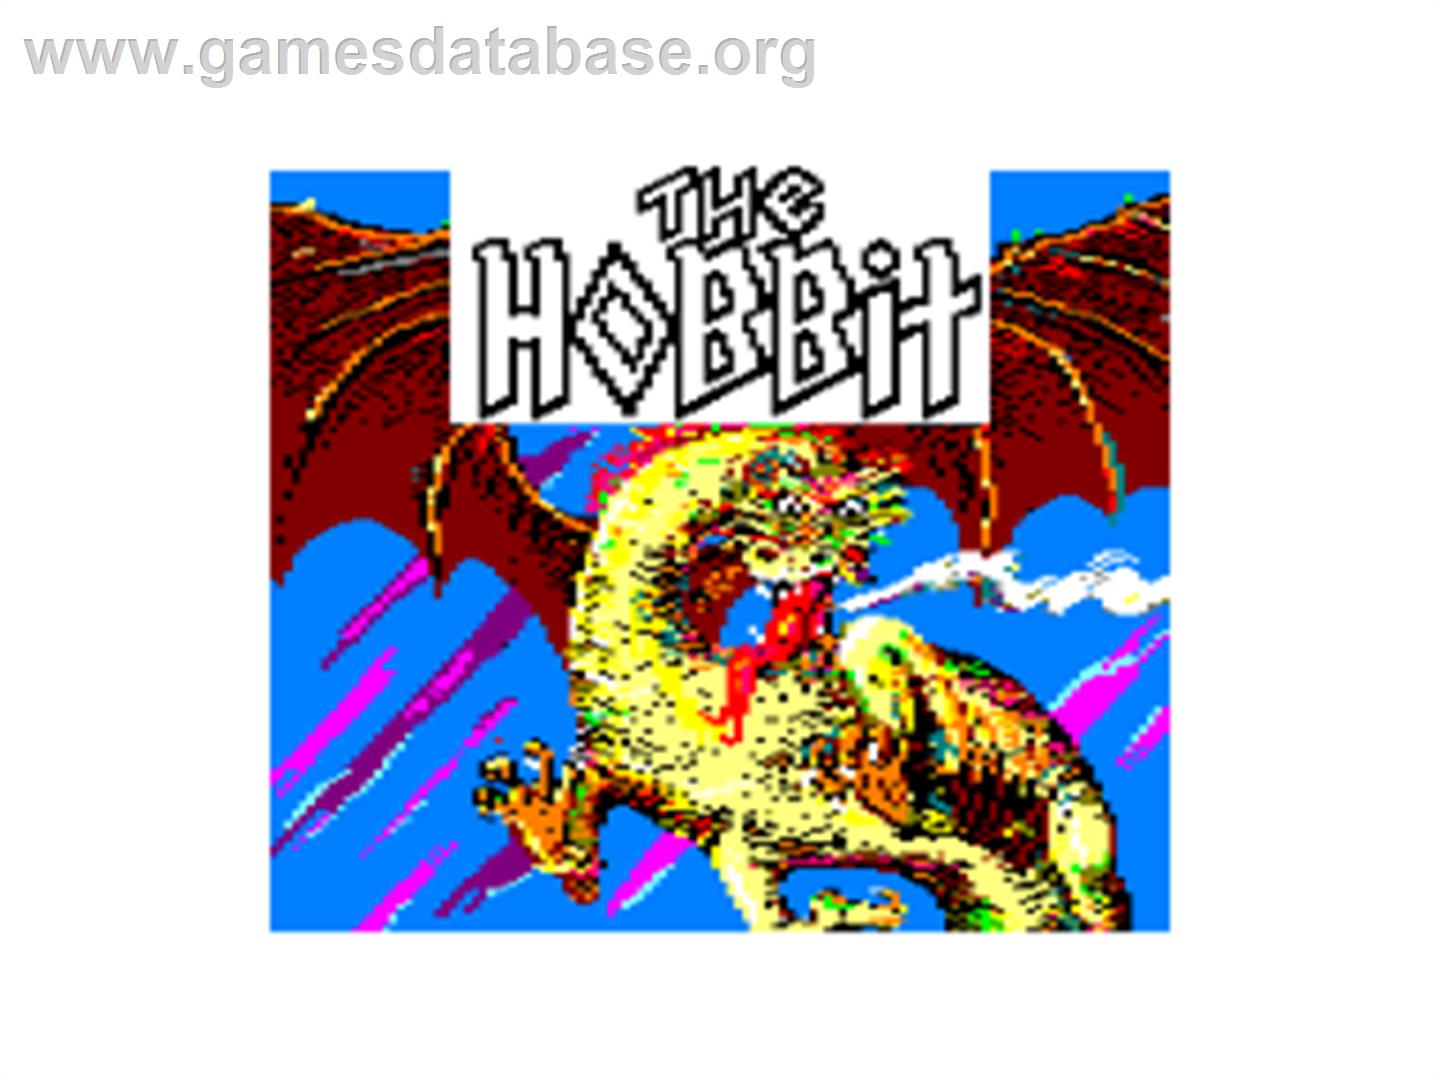 Hobbit - Amstrad CPC - Artwork - Title Screen